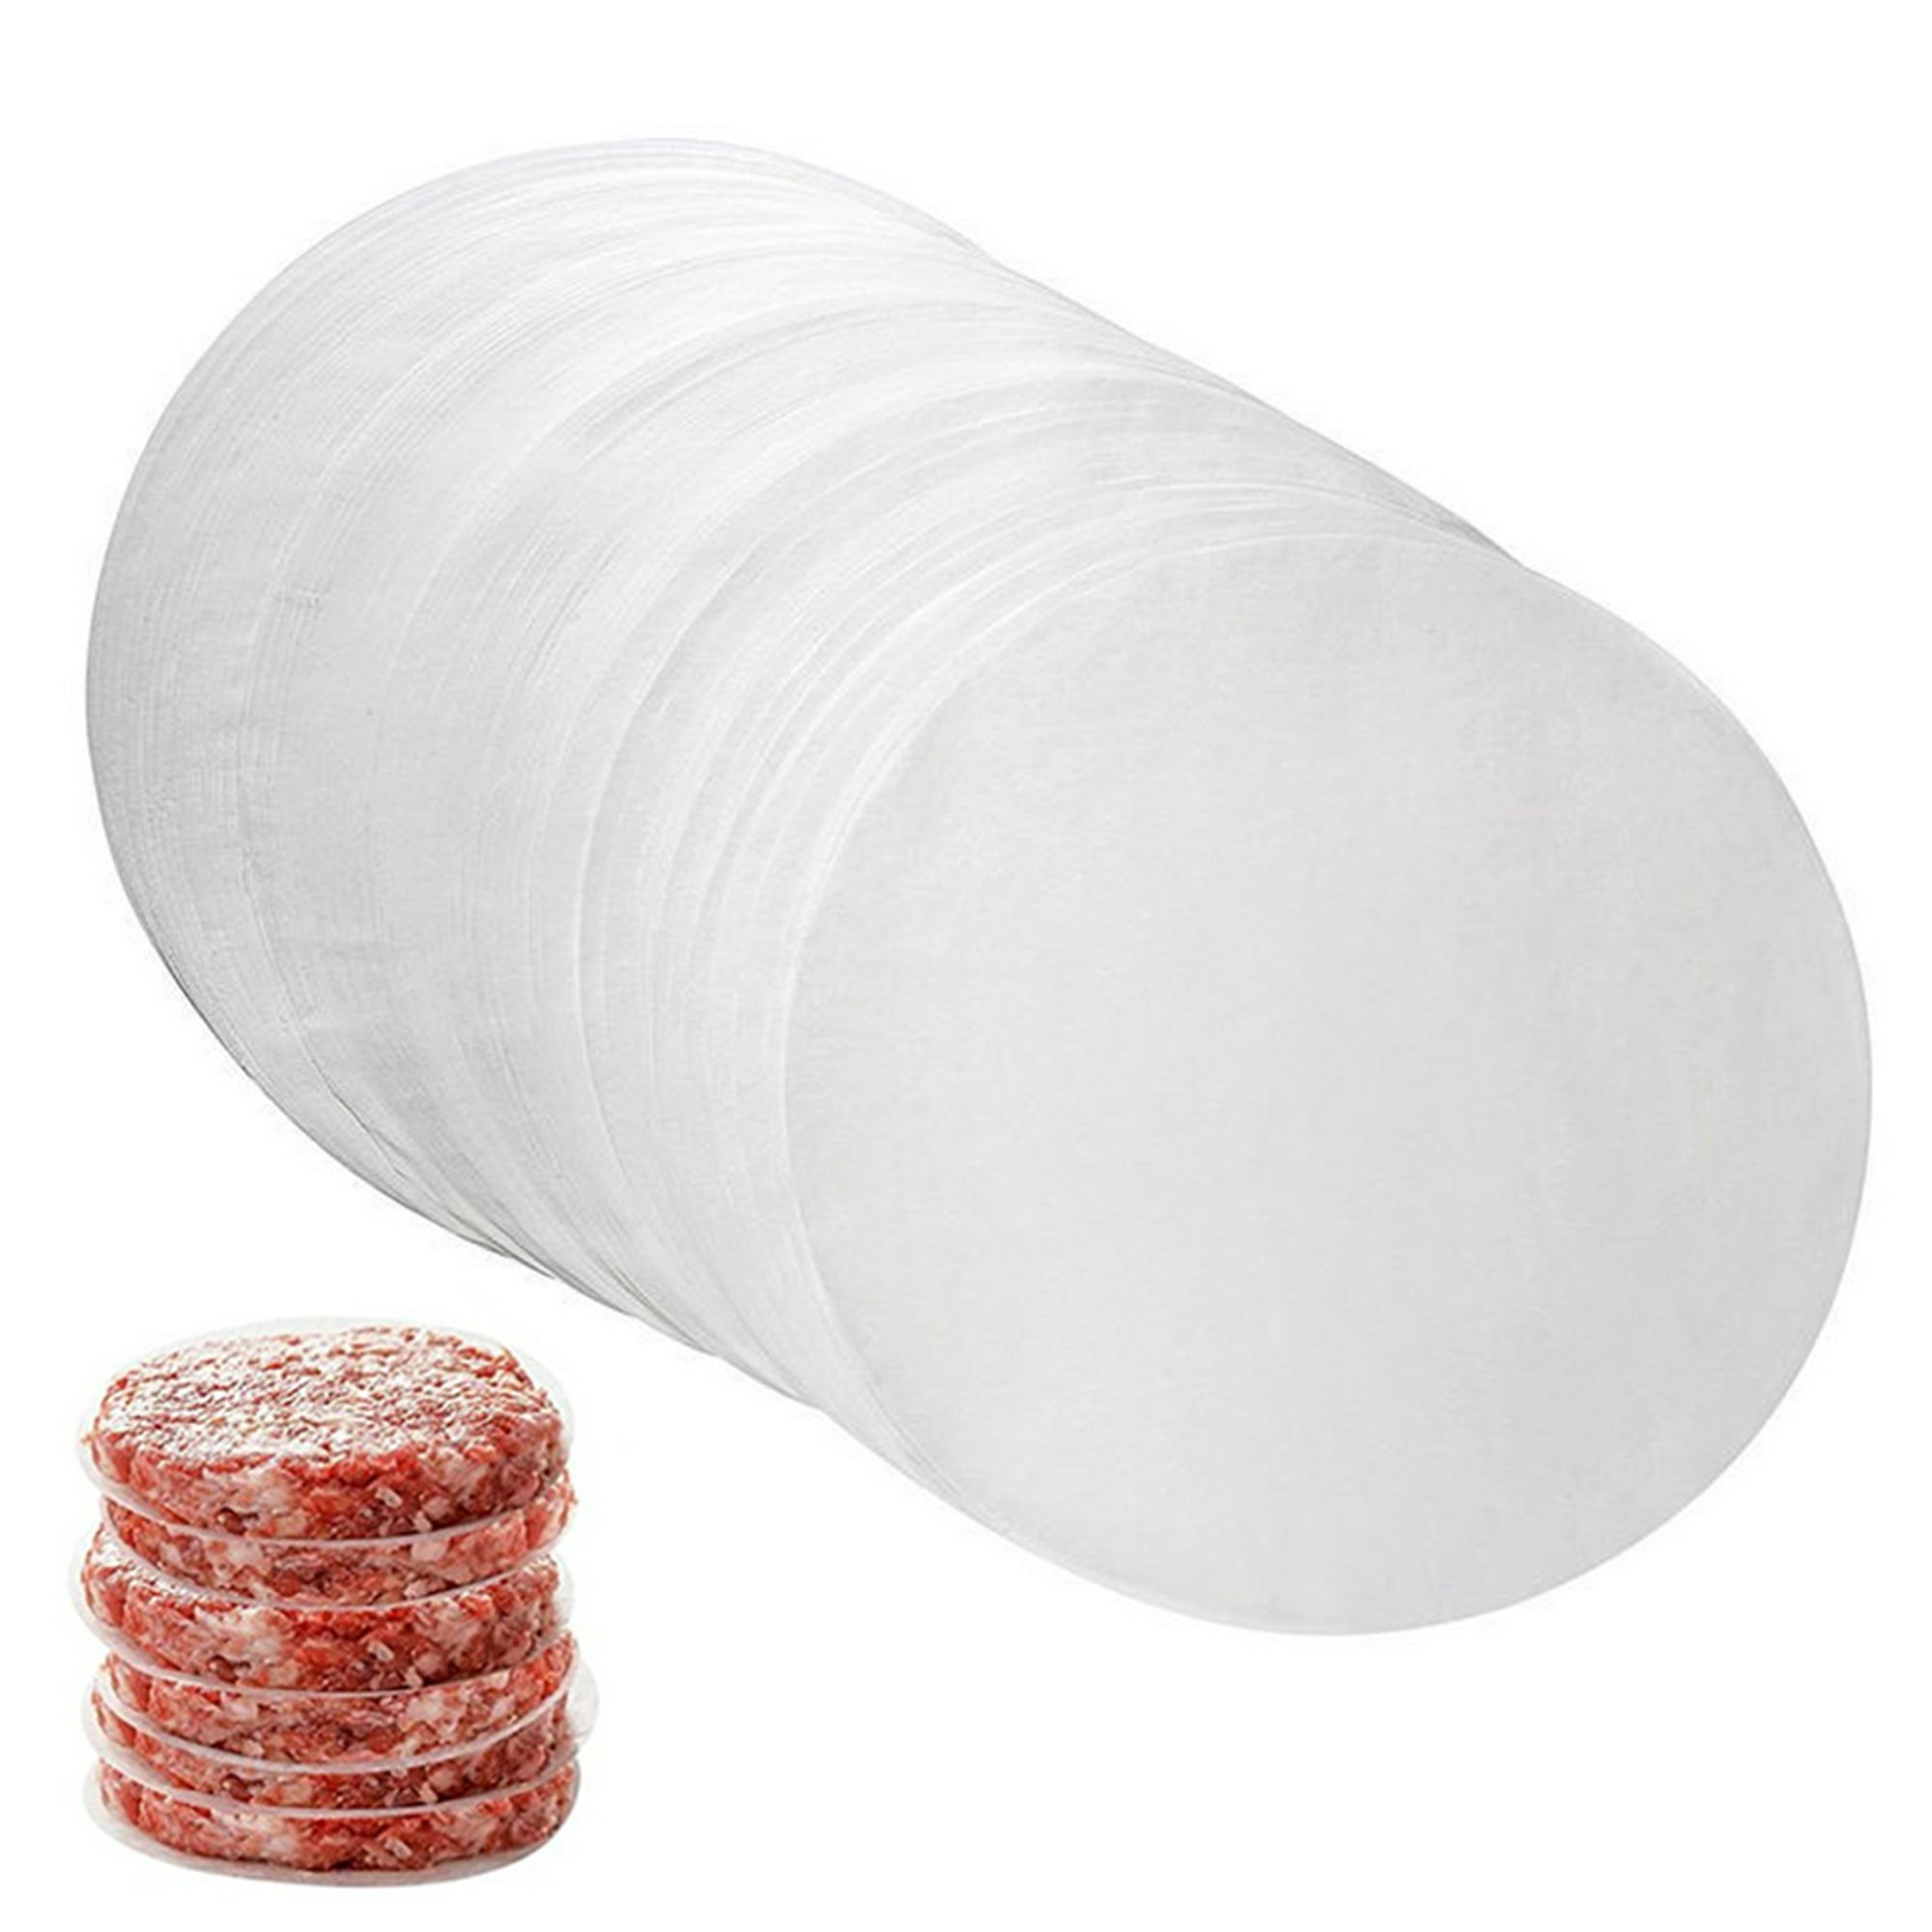 Hojas de papel encerado para carnicero | Hamburguesa Patty, | 200 cuadrados  de papel de cera antiadherente por juego (5.5 x 5.5)